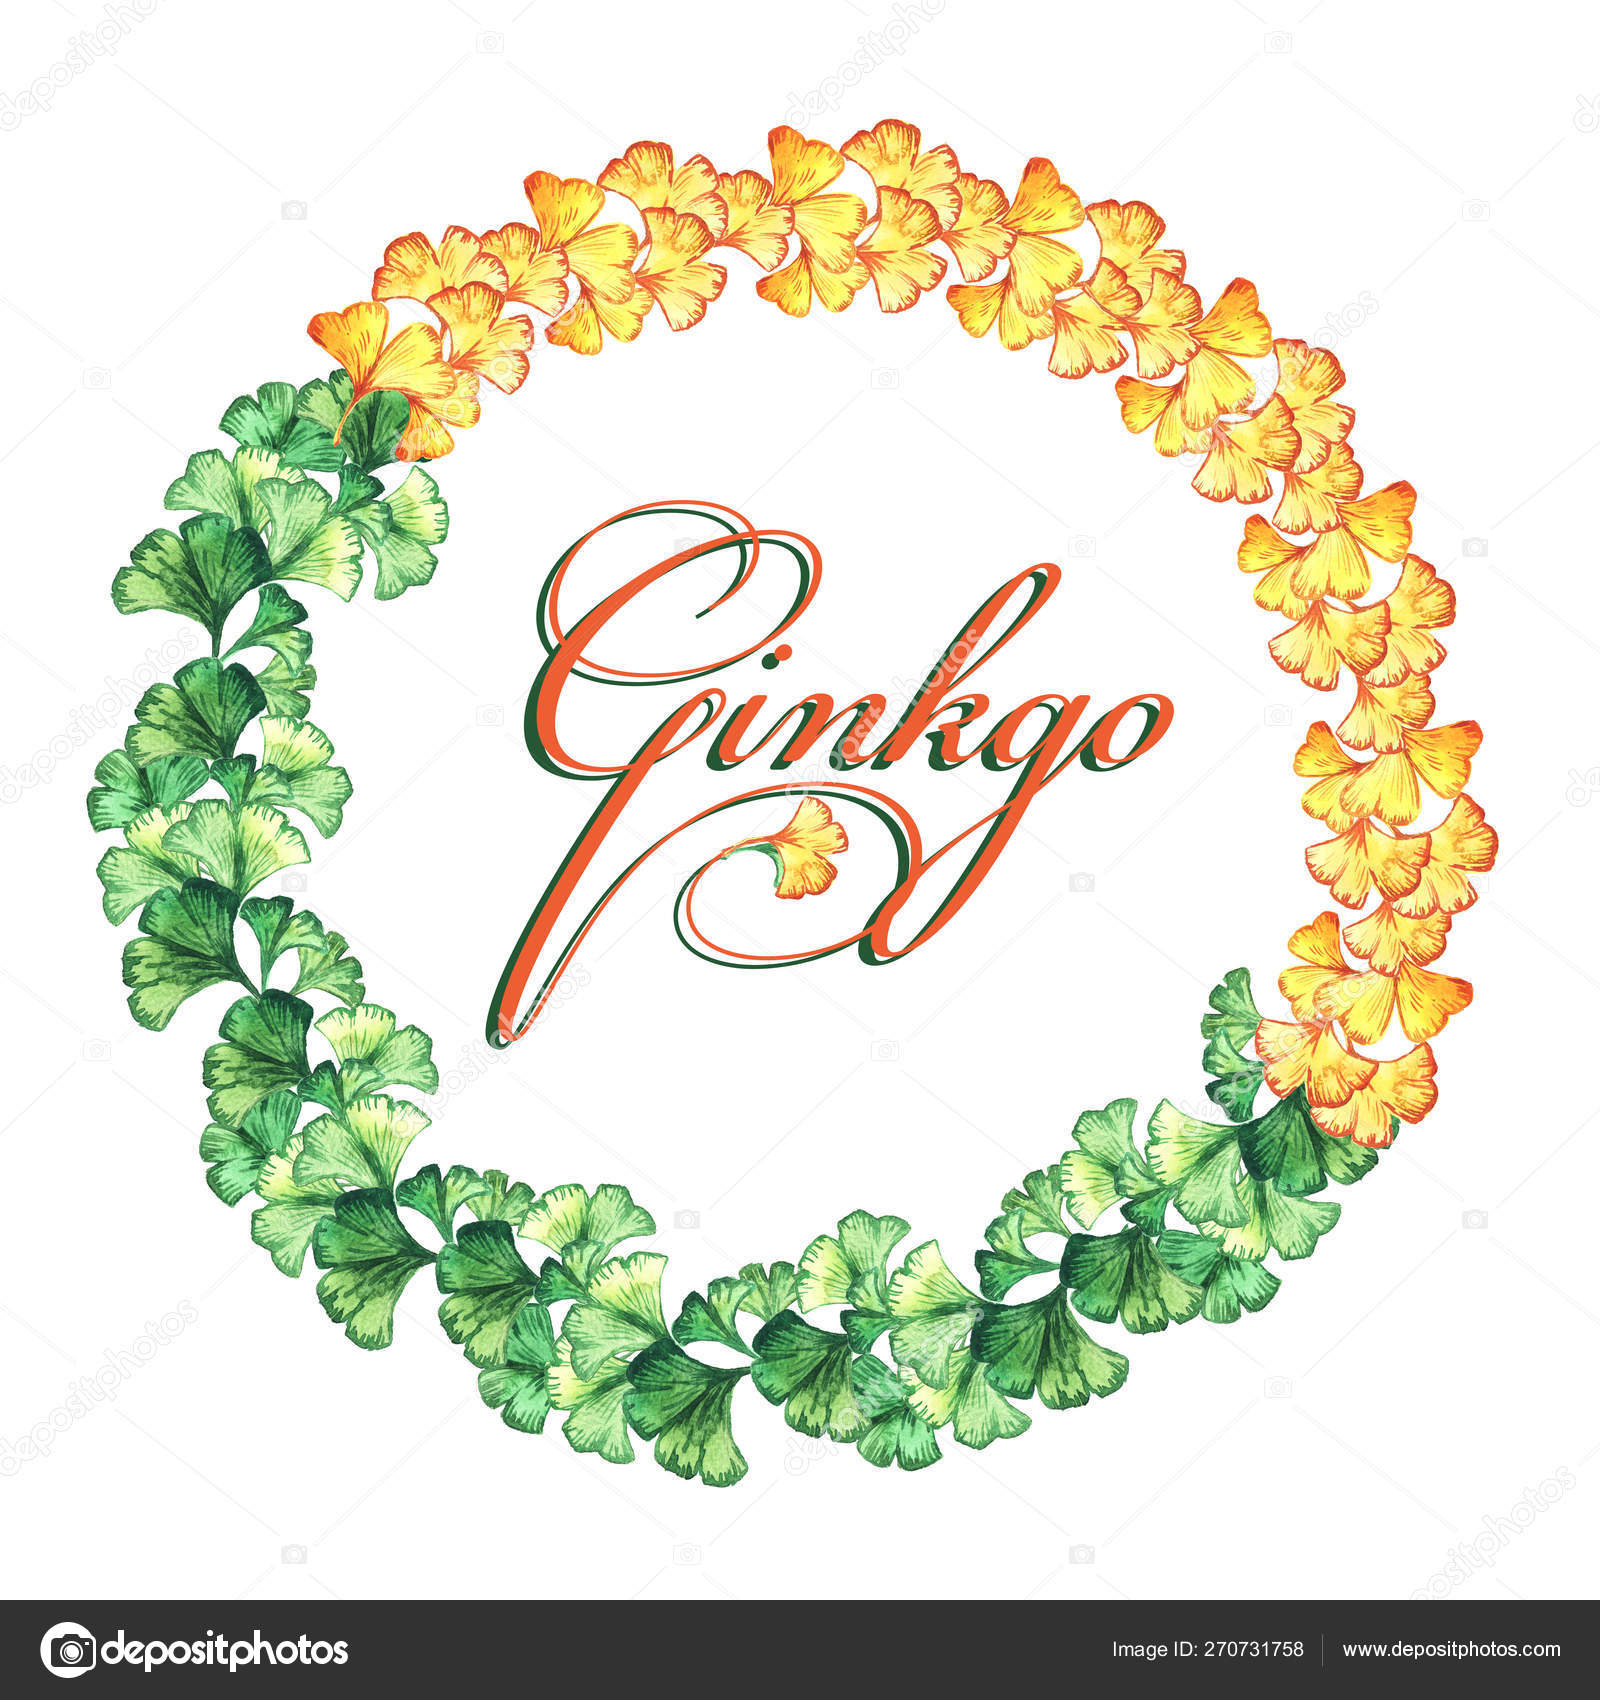 イチョウ葉の黄色と緑の葉の丸いフレーム 水彩 印刷 招待状 グリーティングカード ストック写真 C Zazulla